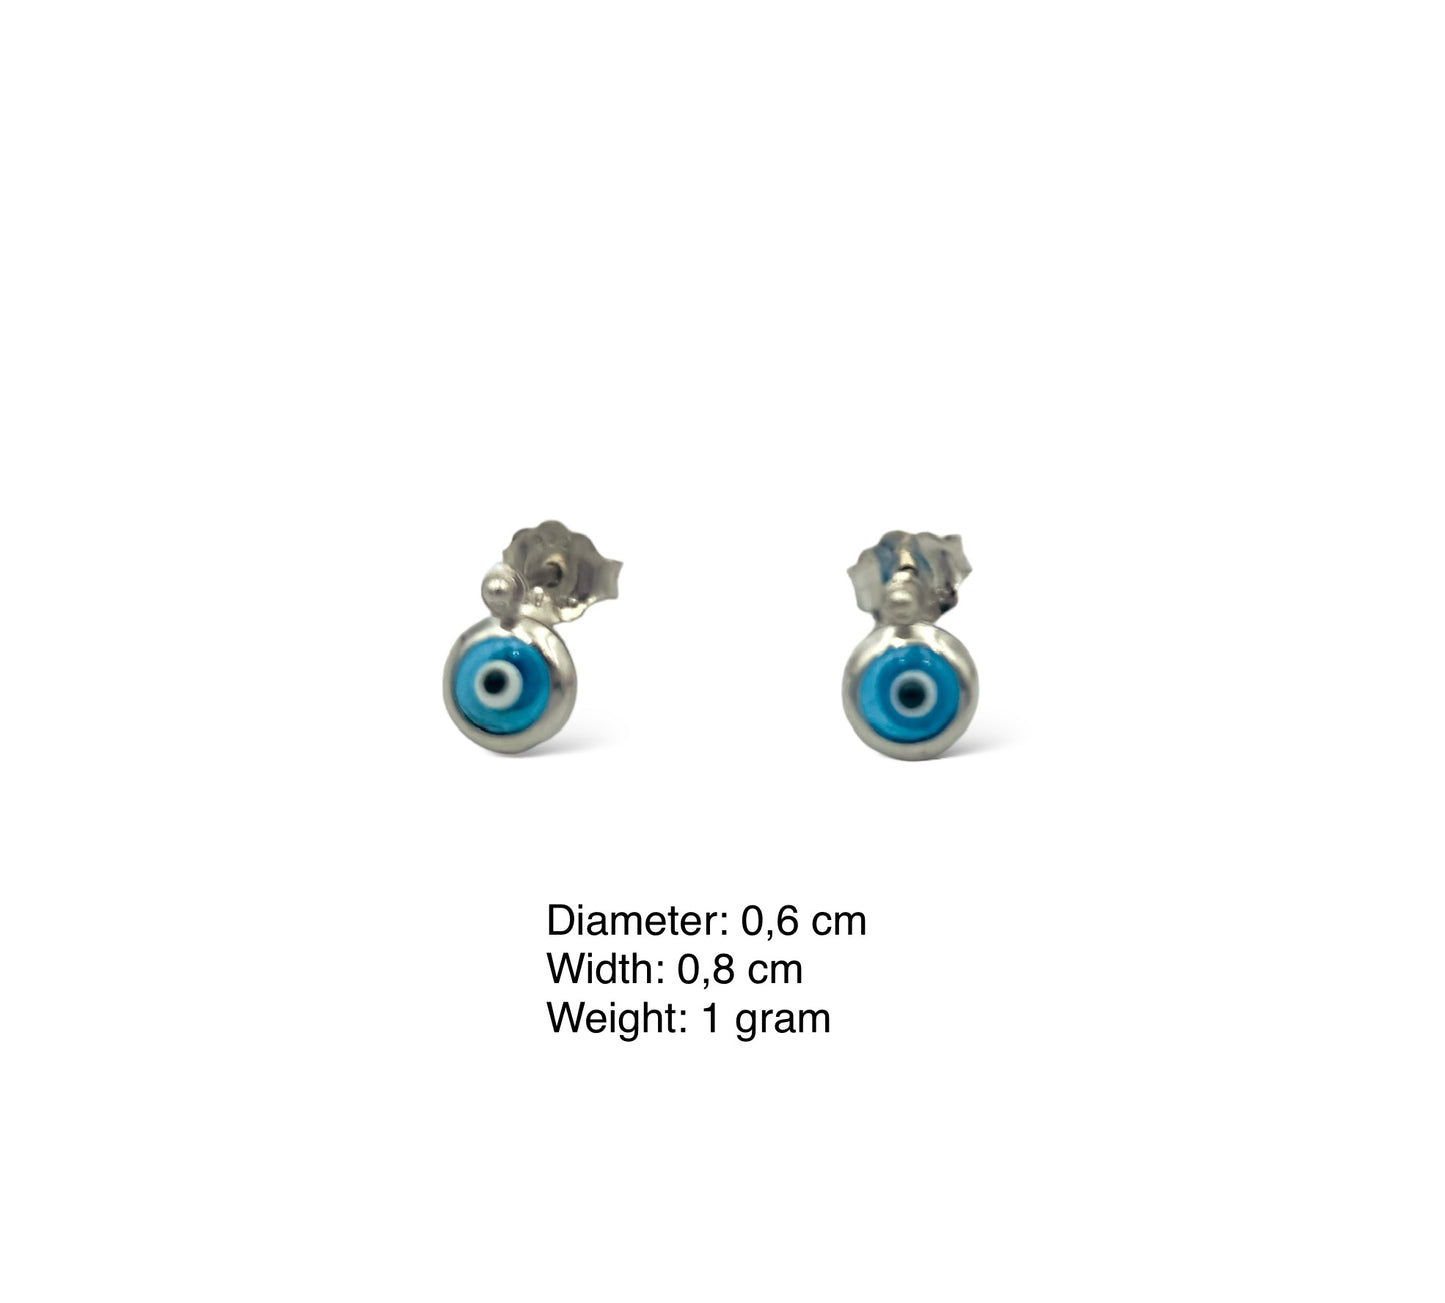 Silver Evil eye design earrings